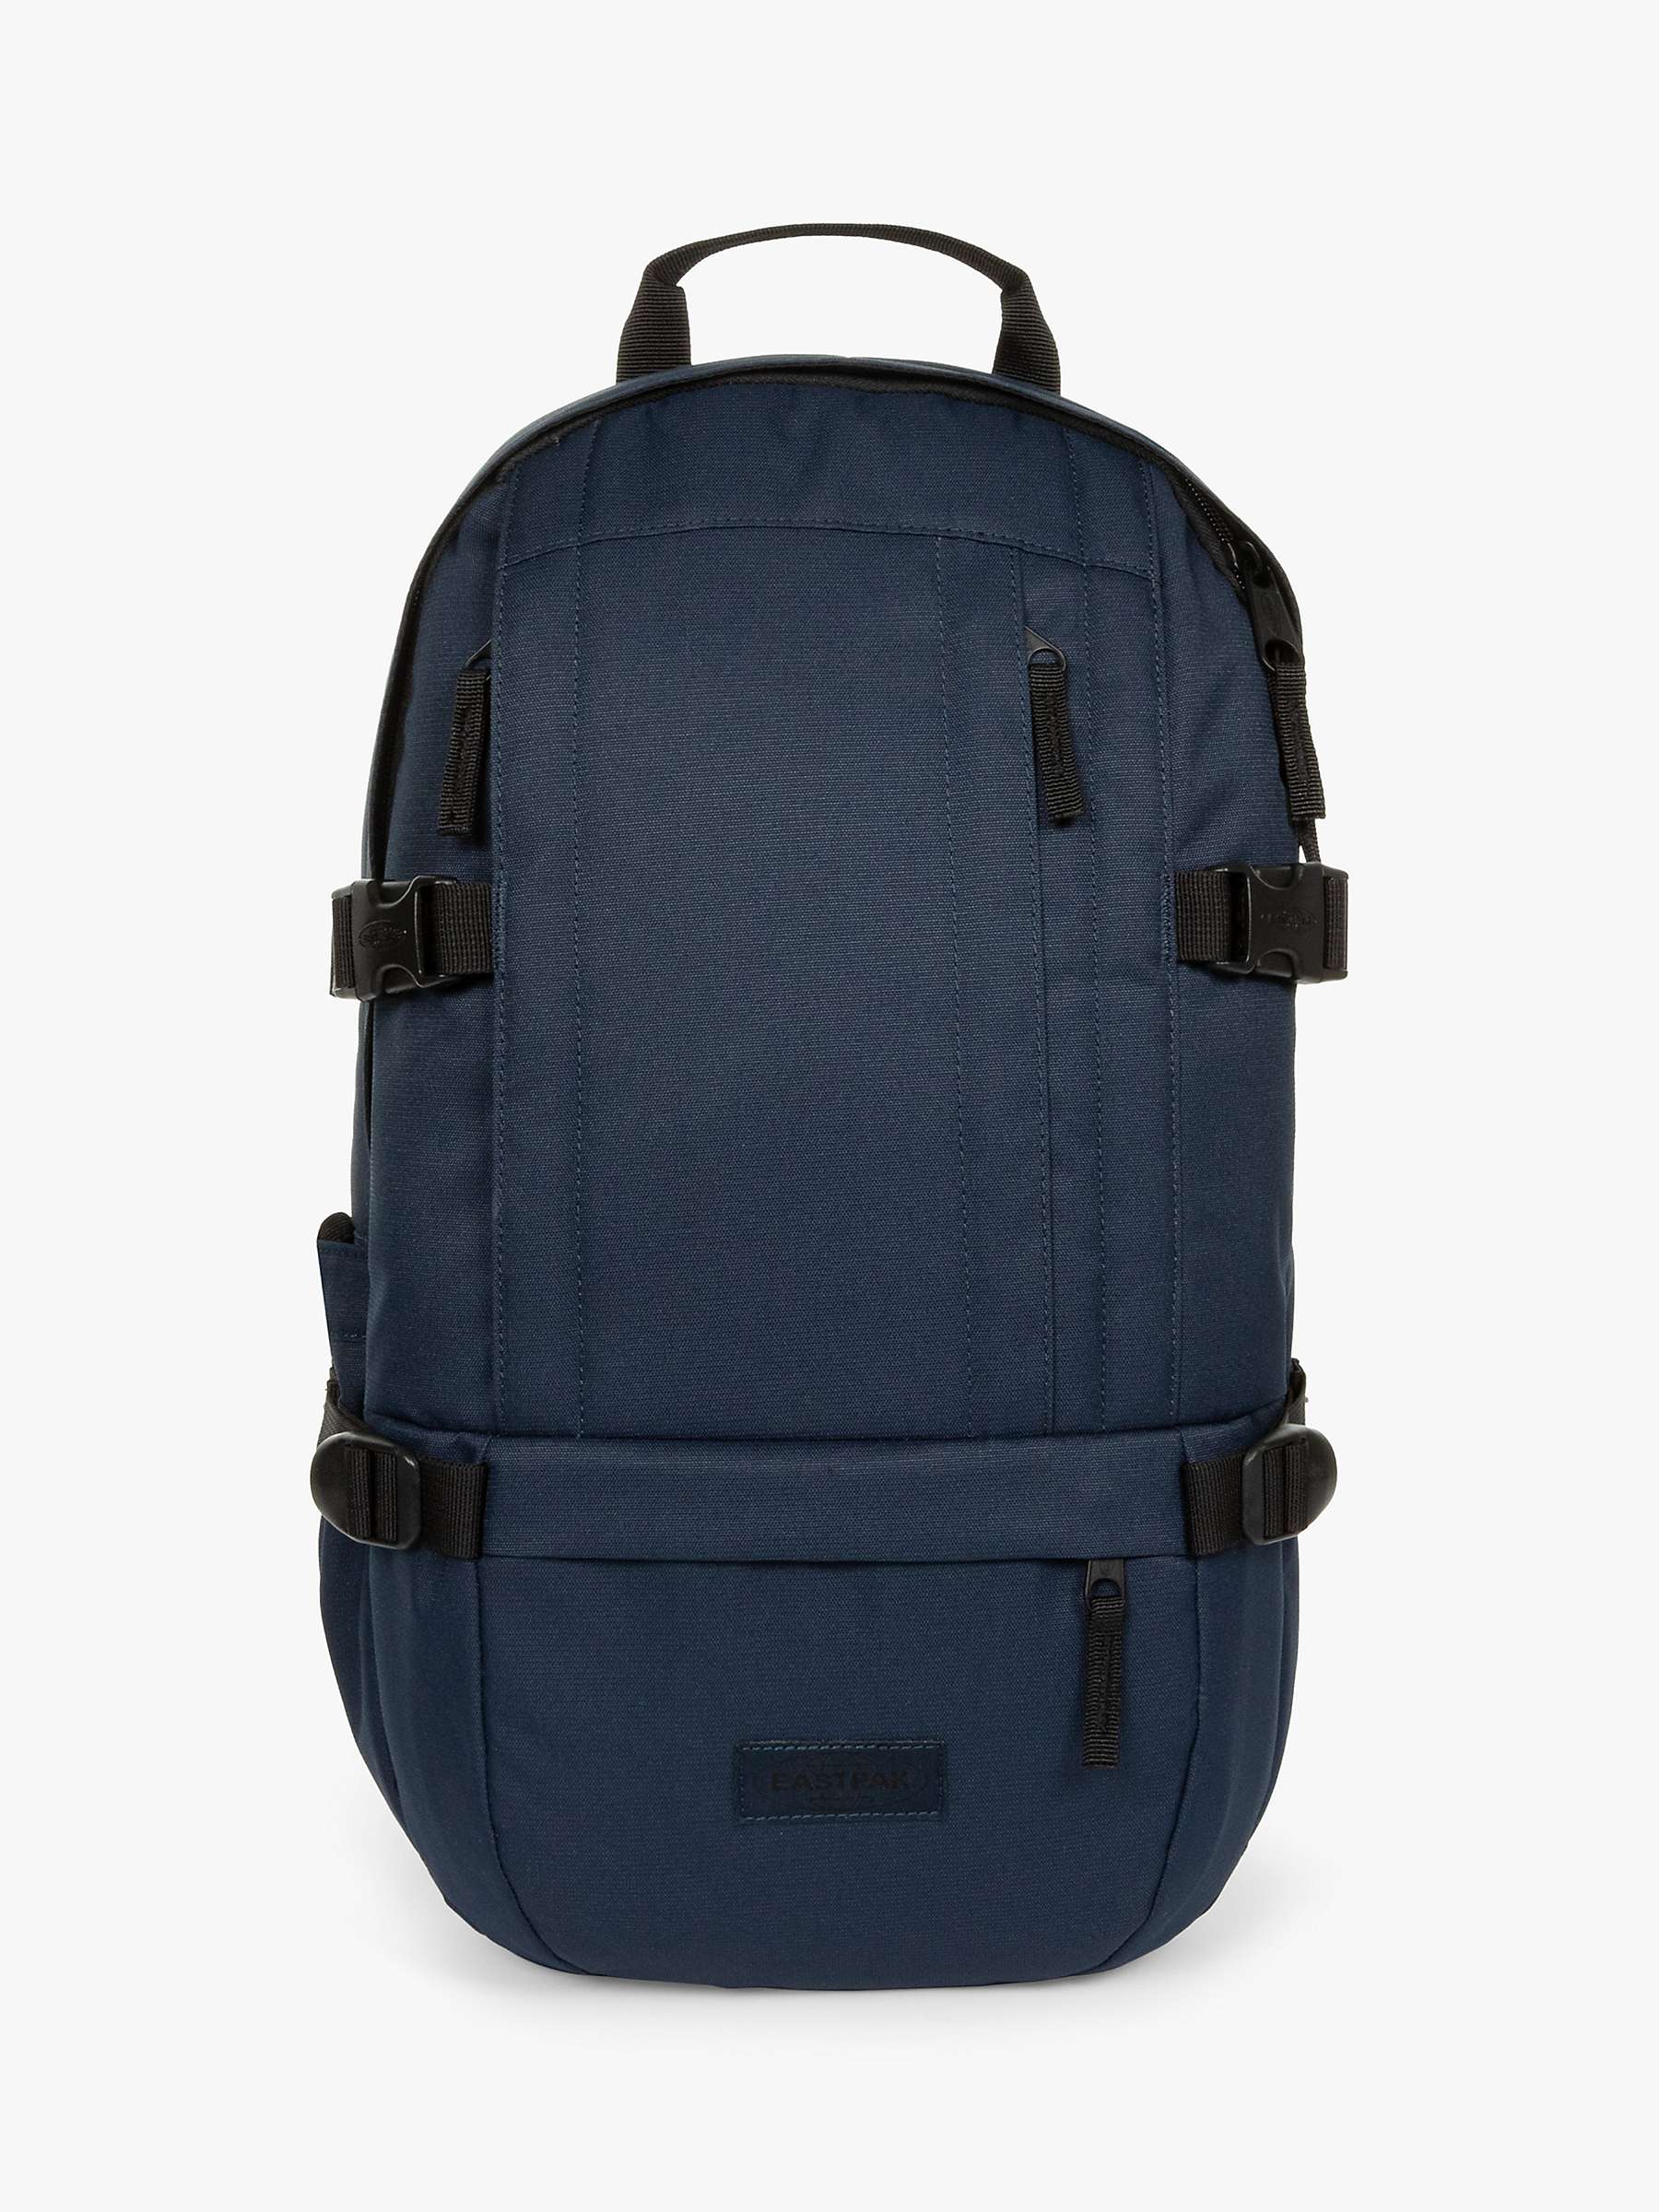 Buy Eastpak Floid Backpack Online at johnlewis.com